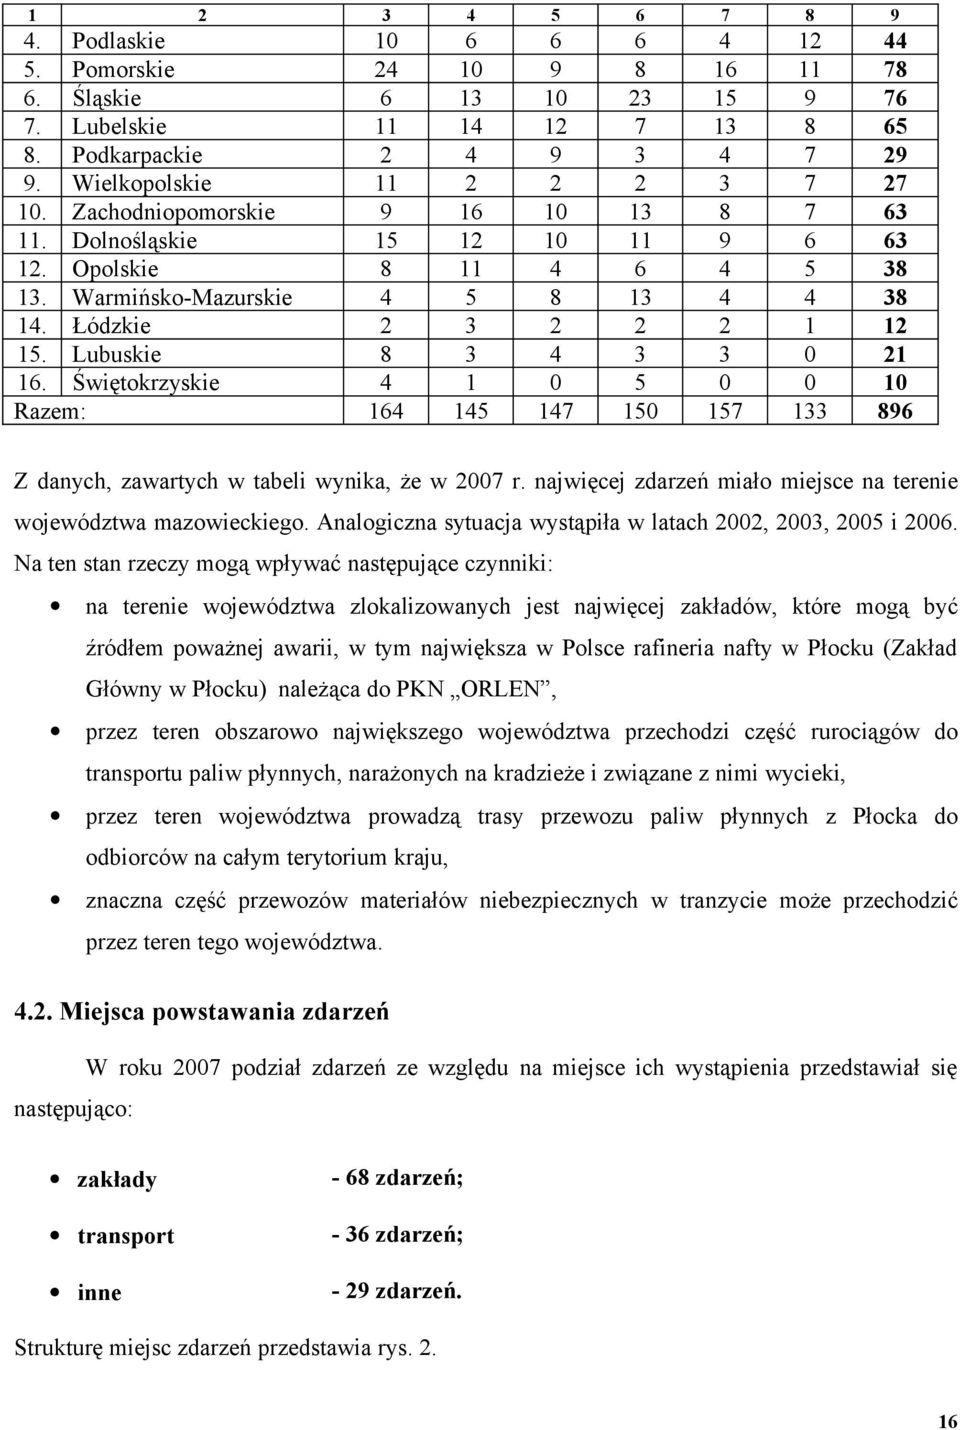 7 5 29 27 3 3 38 38 12 21 10 89 Z danych, zawartych w tabeli wynika, że w 2007 r. najwięcej zdarzeń miało miejsce na terenie województwa mazowieckiego.